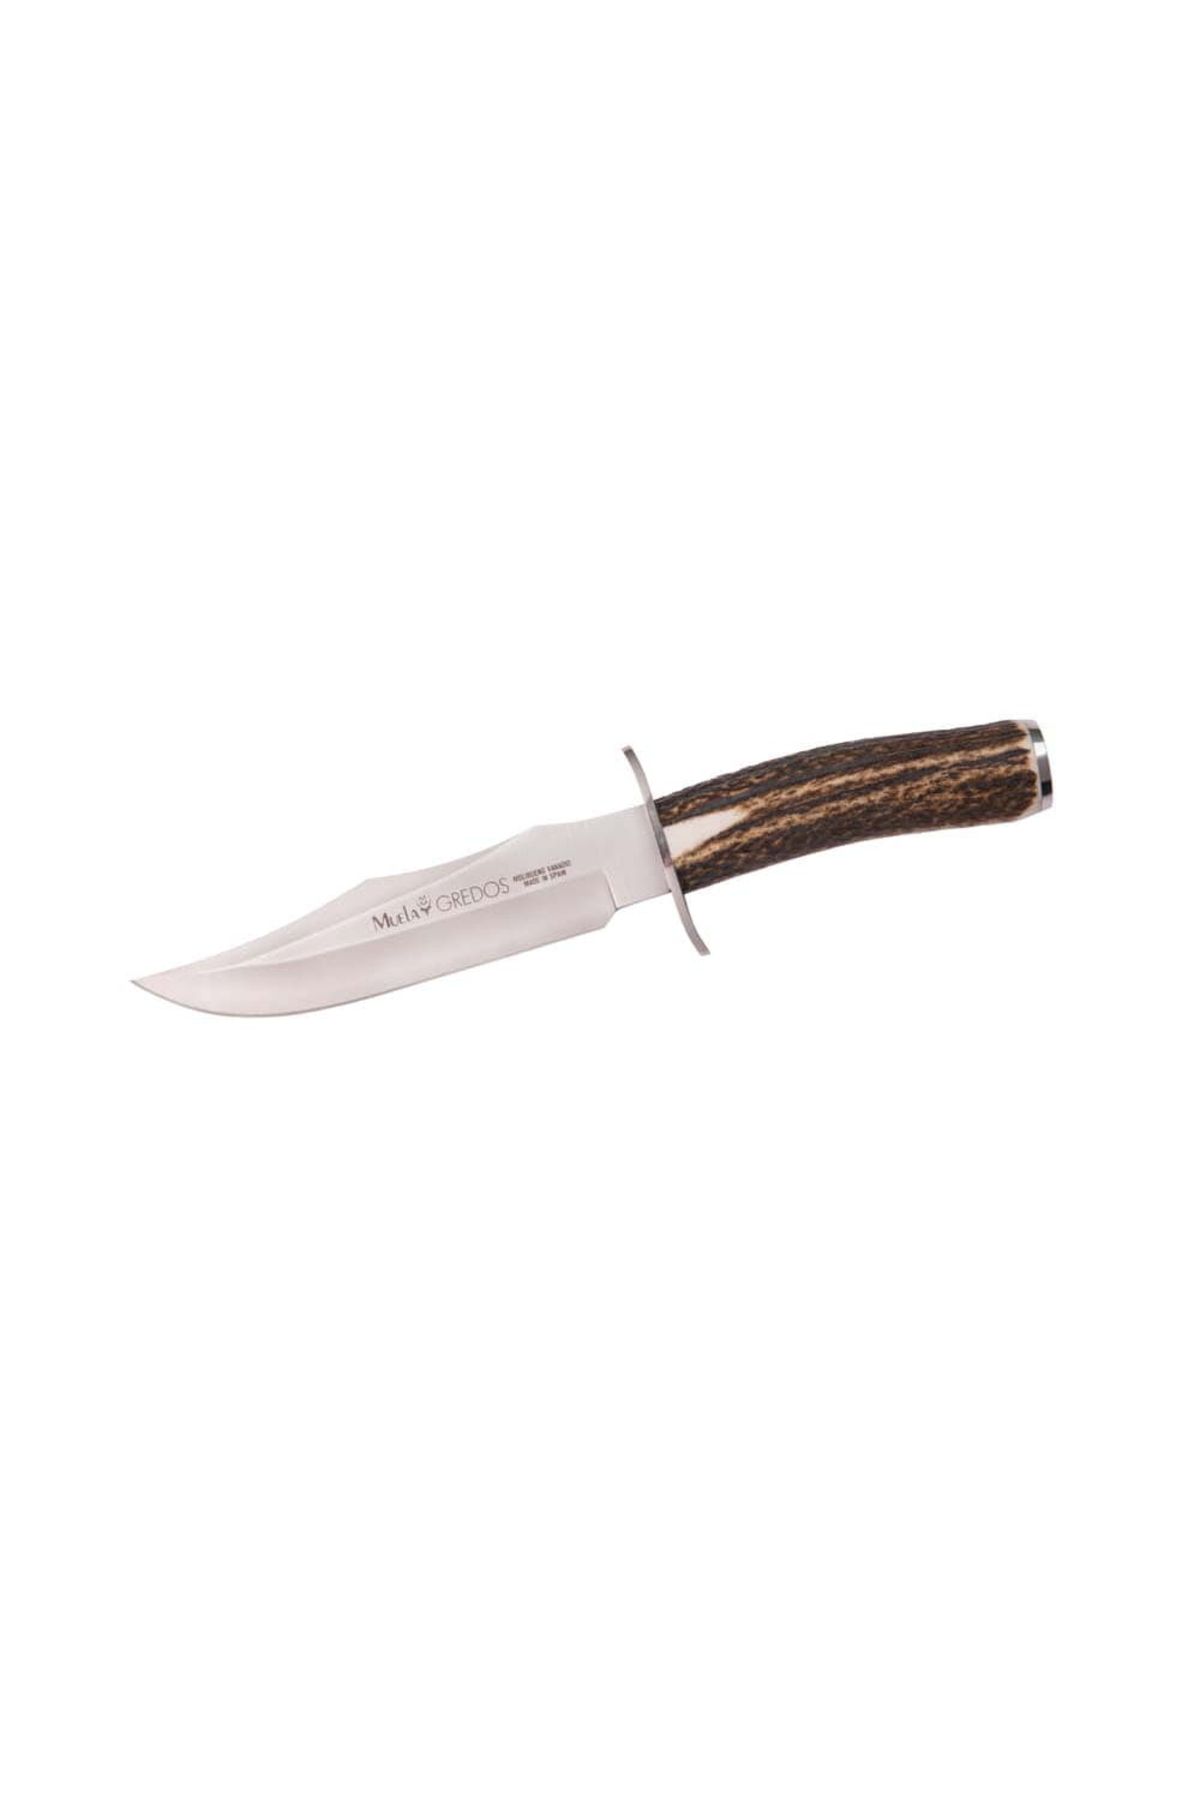 Muela Gredos 16,5cm Bıçak, Geyik Boynuzu Sap